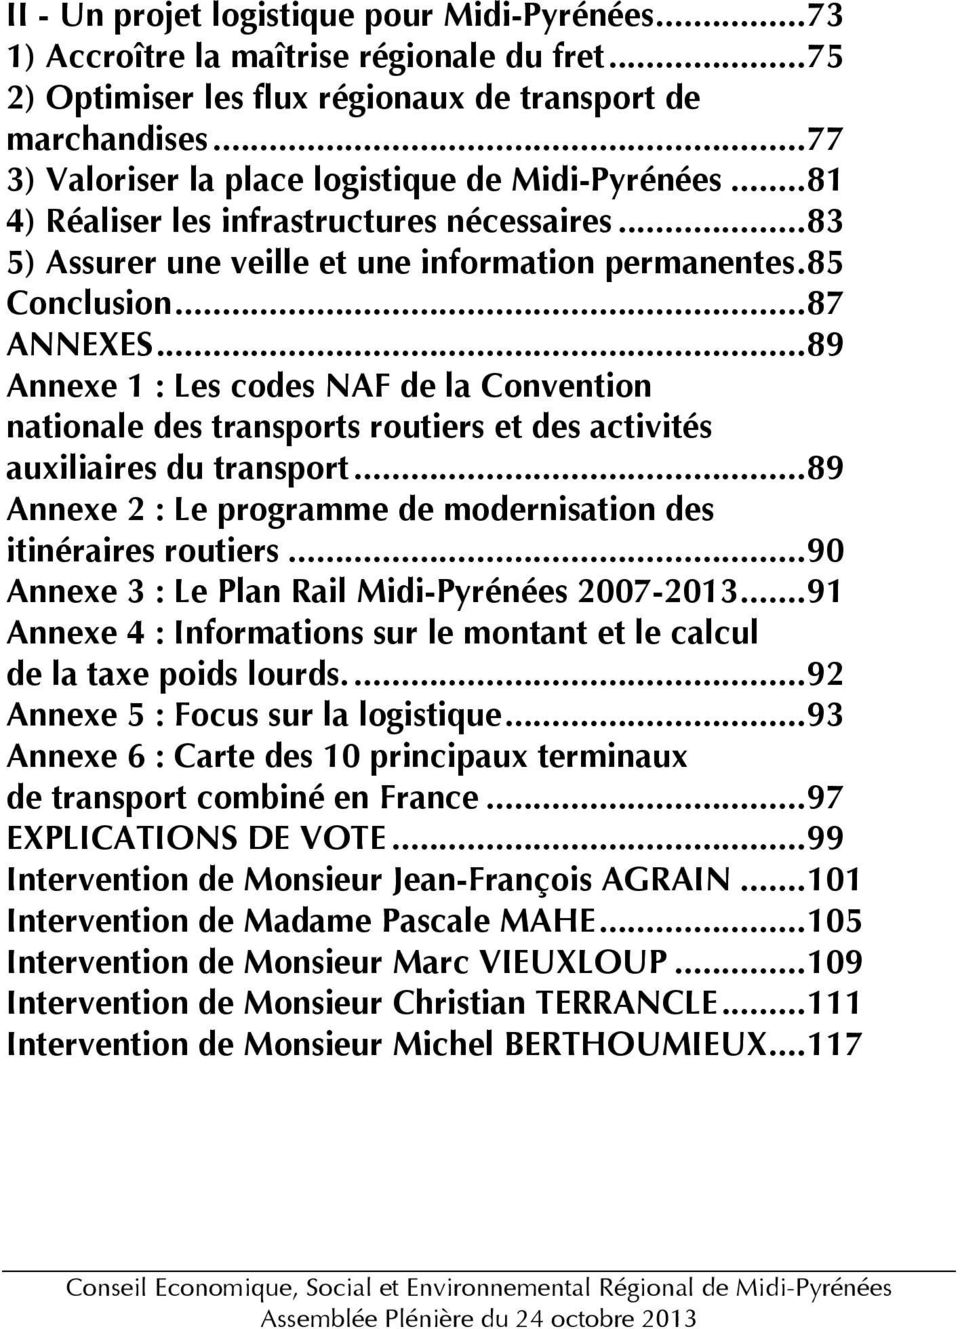 ..89 Annexe 1 : Les codes NAF de la Convention nationale des transports routiers et des activités auxiliaires du transport...89 Annexe 2 : Le programme de modernisation des itinéraires routiers.